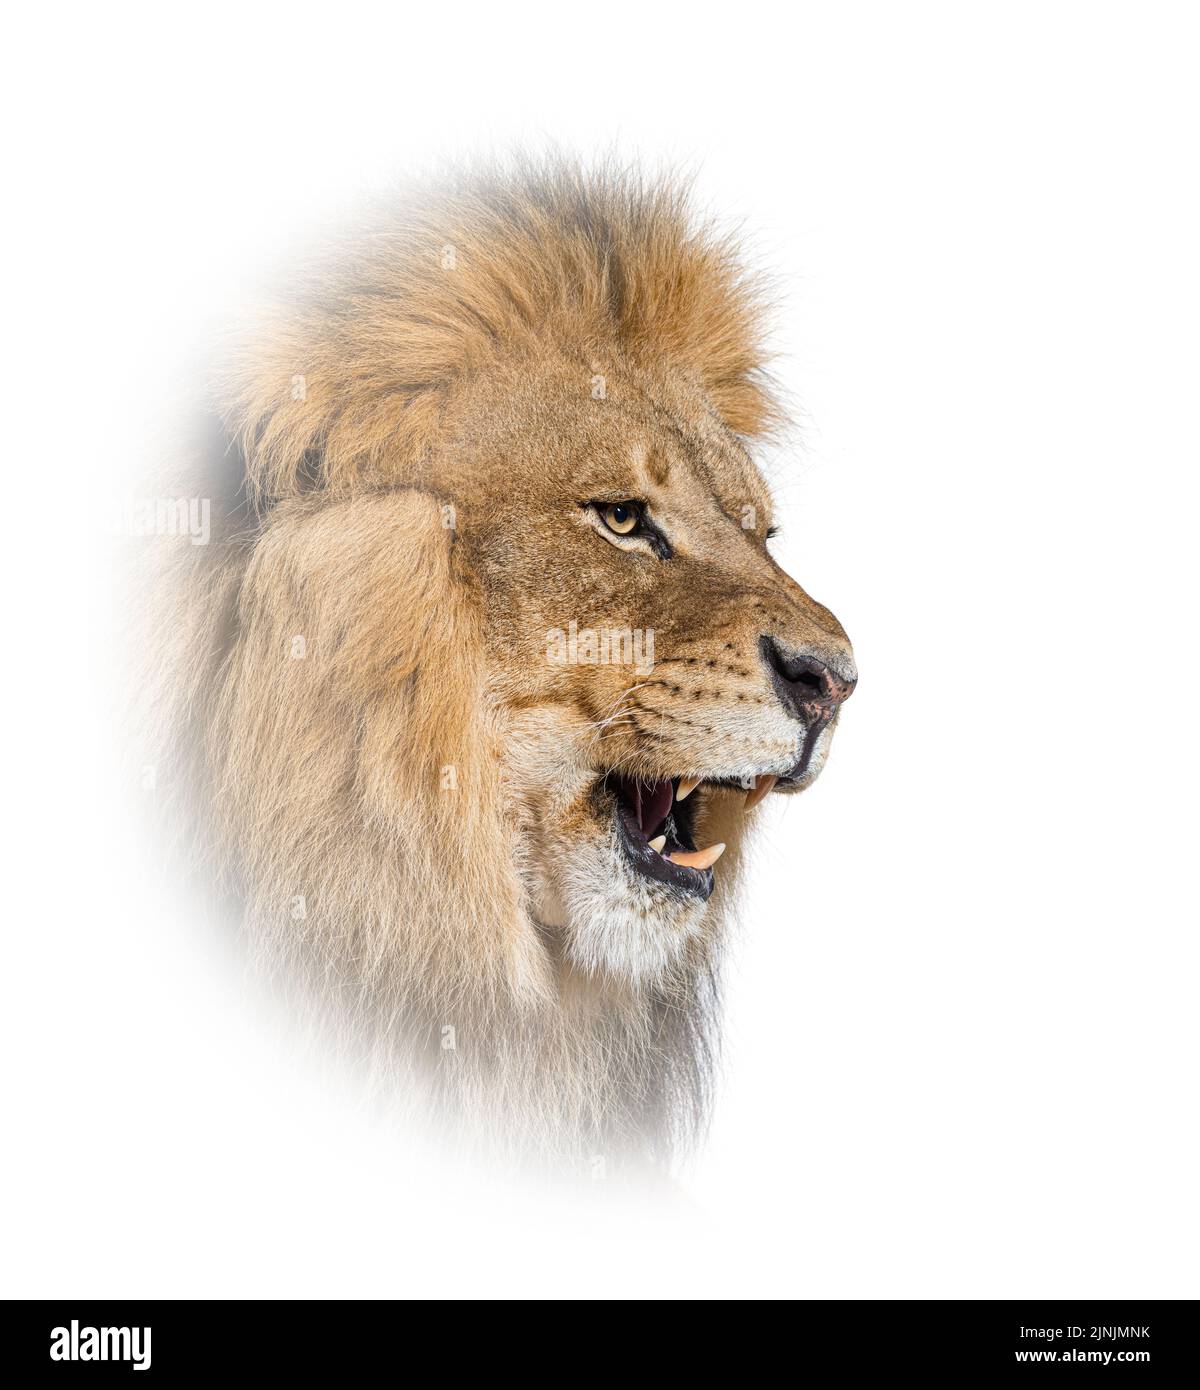 Männlicher erwachsener Löwe brüllt und zeigt seine Zähne, seine Reißzähne, Panthera leo, in einem weißen Kreis Stockfoto